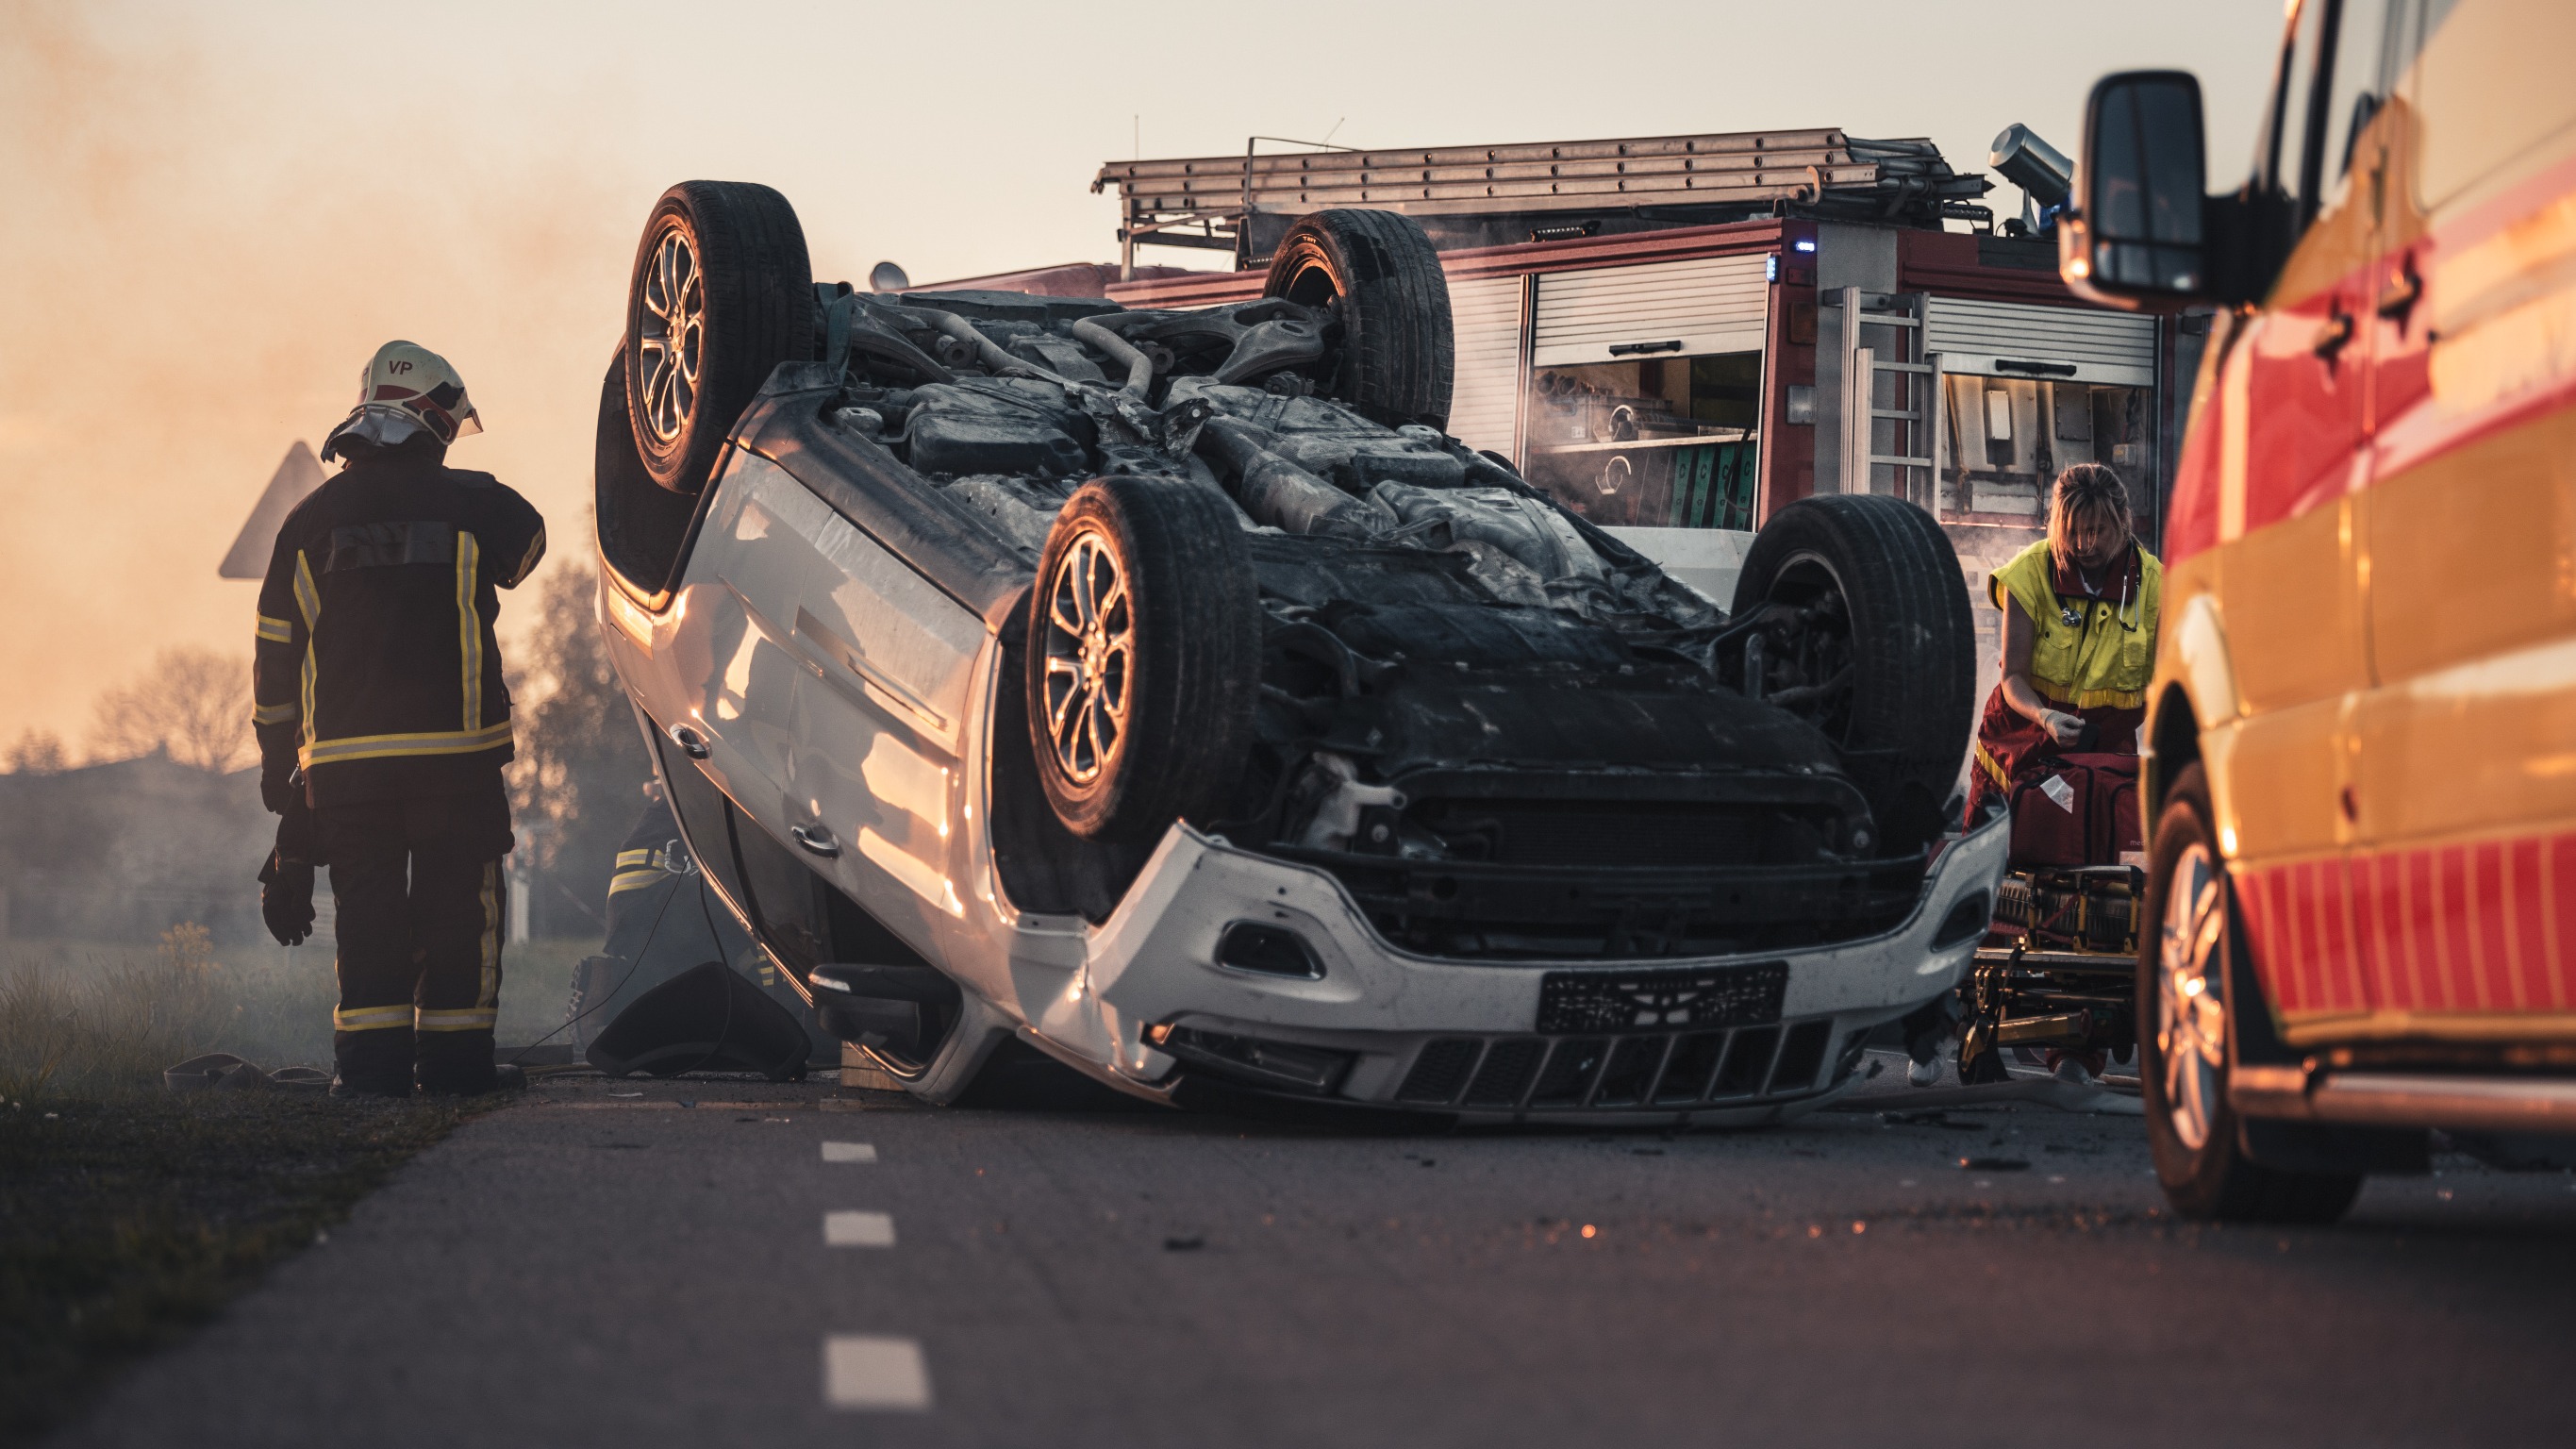 El exceso de velocidad es una de las principales causas de accidentes automovilísticos, con consecuencias que pueden ser mortales.